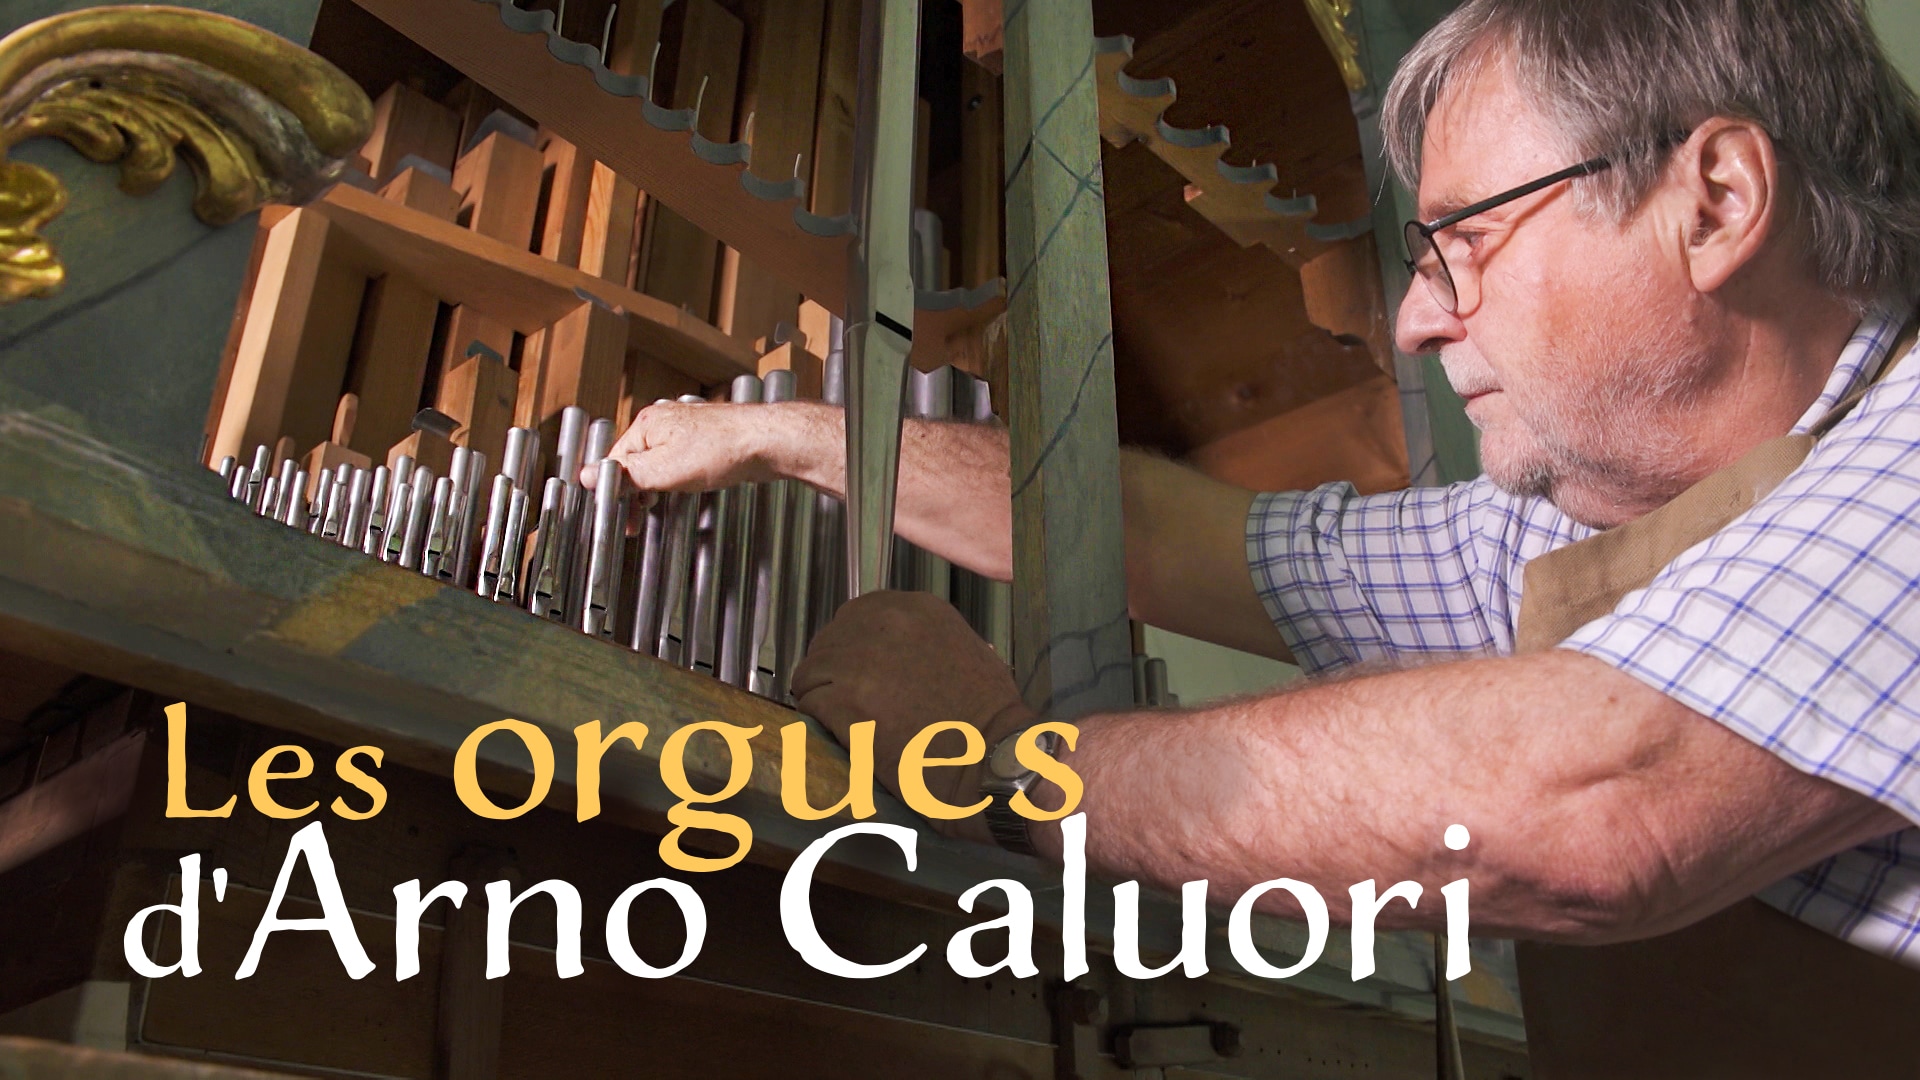 Les orgues d'Arno Caluori